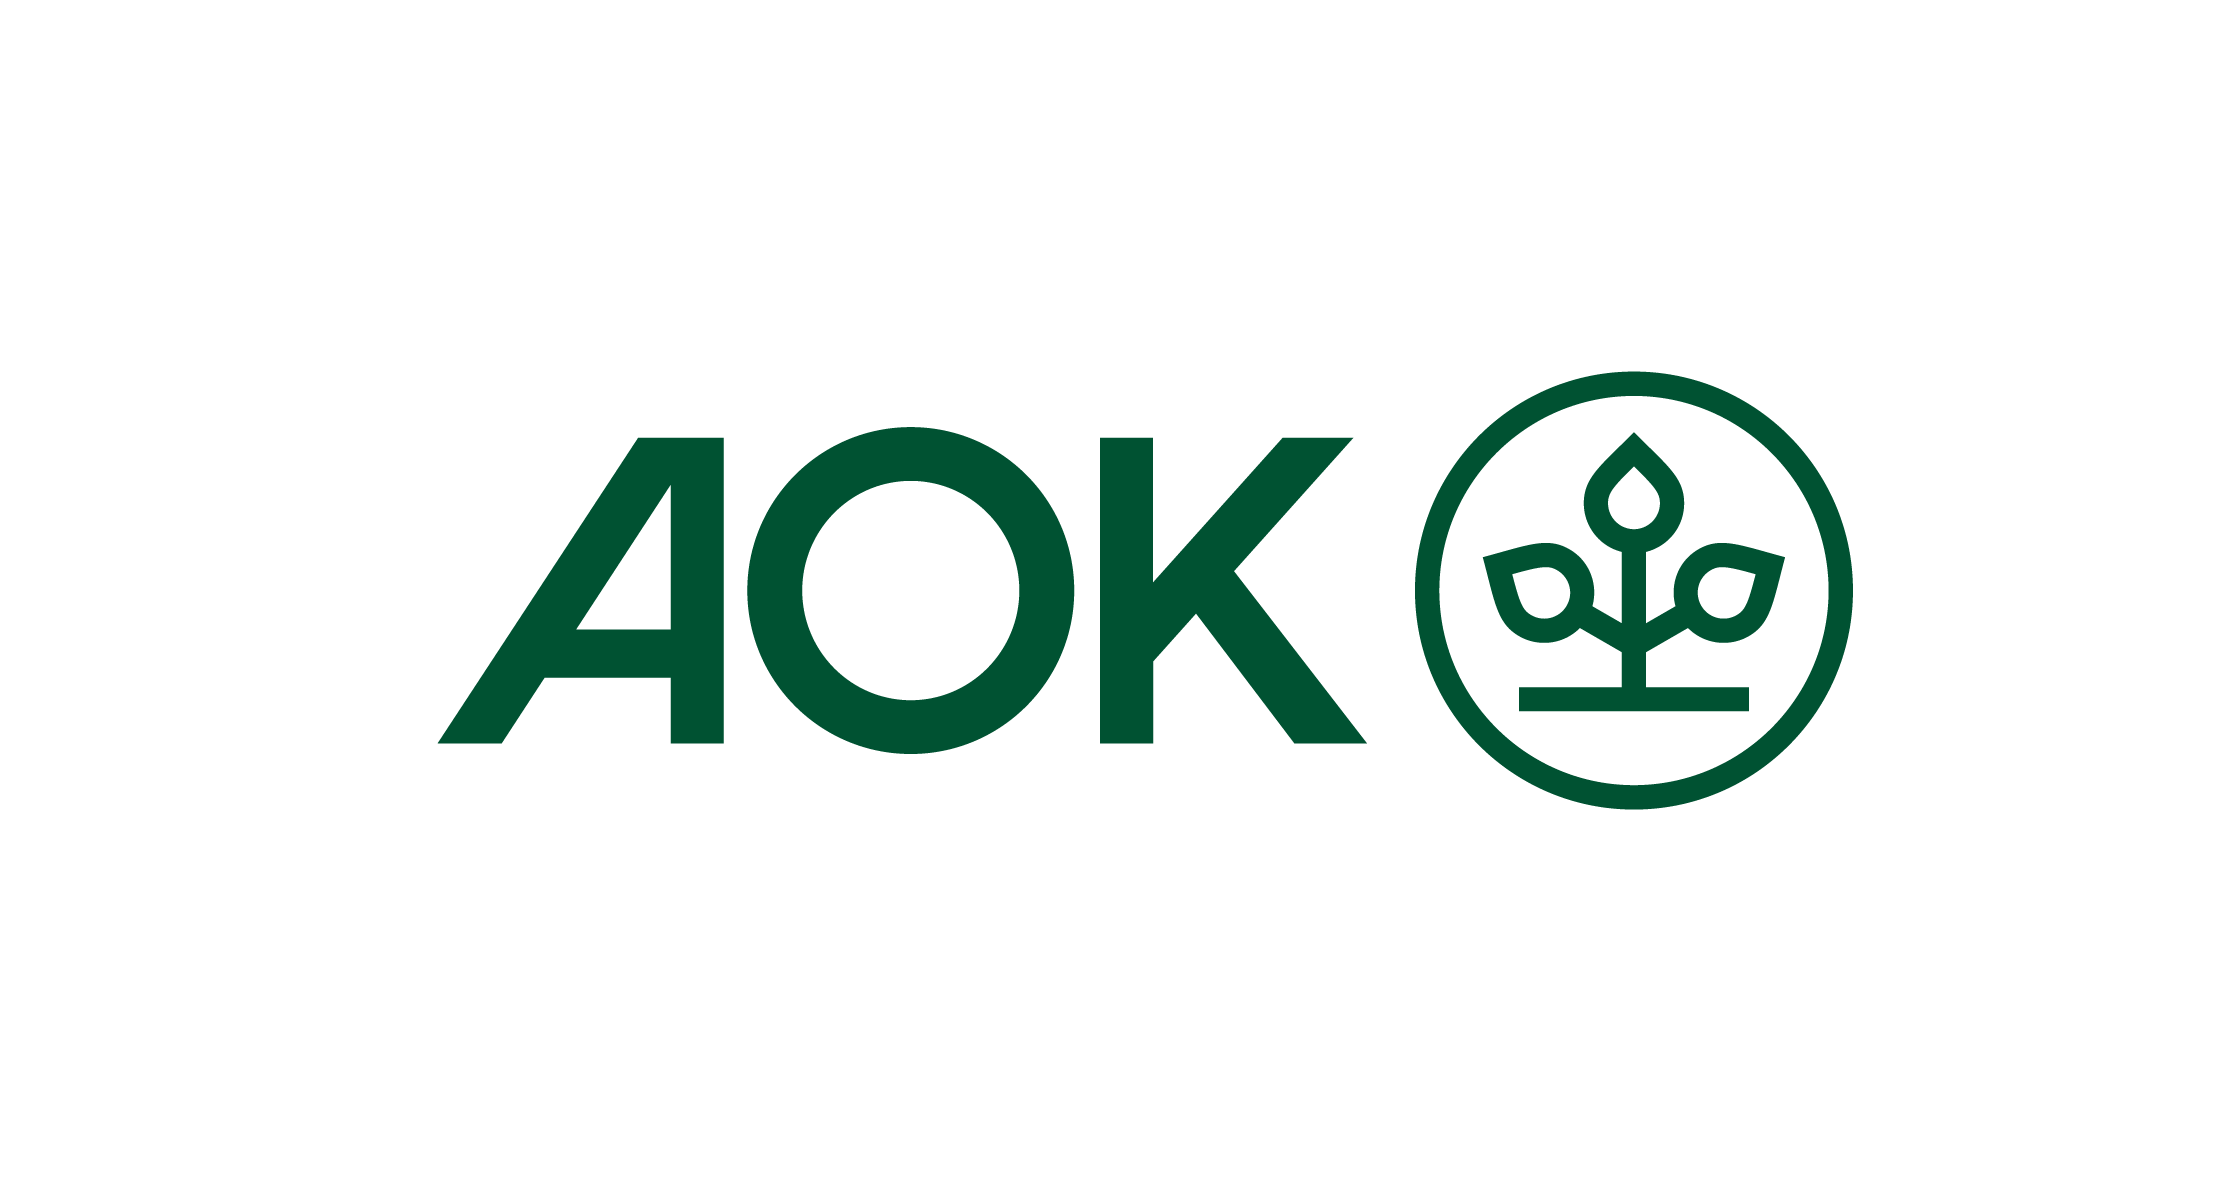 AOK_Logo